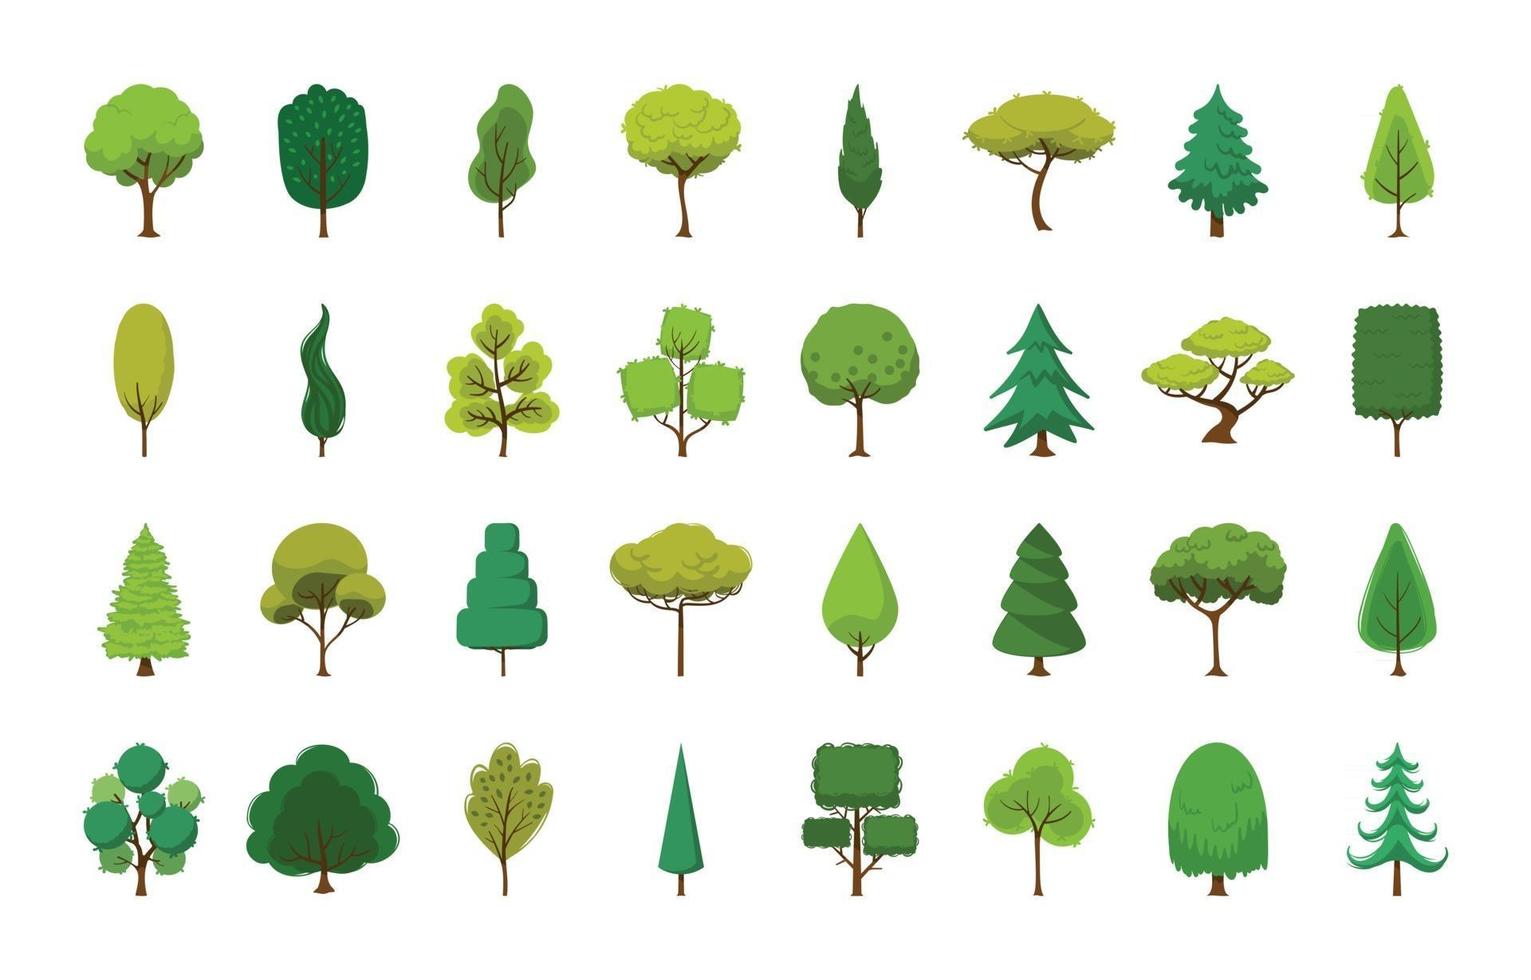 colección de árboles de dibujos animados verdes vector